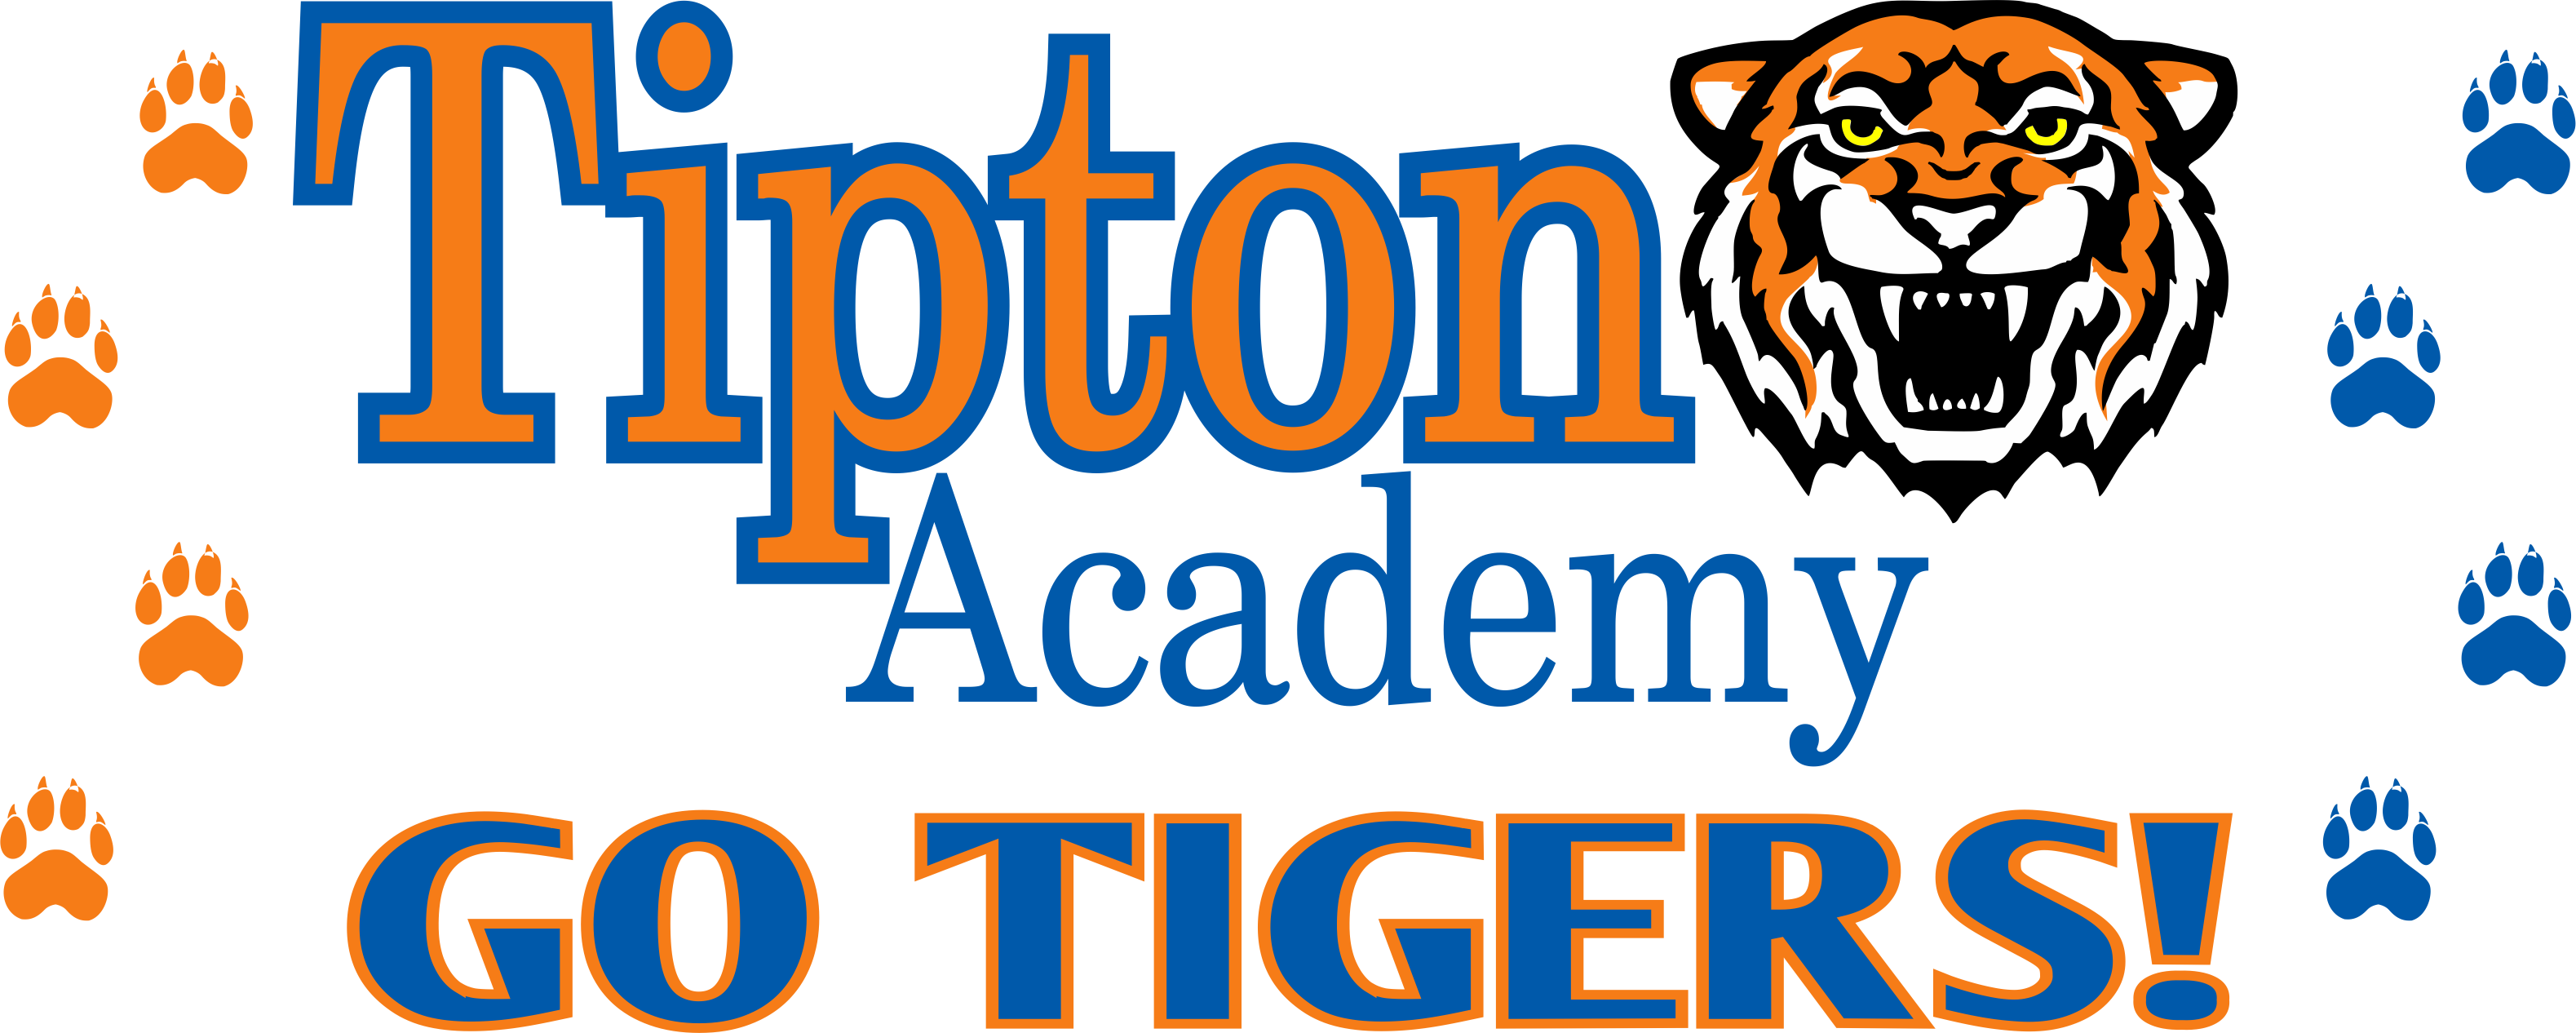 Tipton Tigers